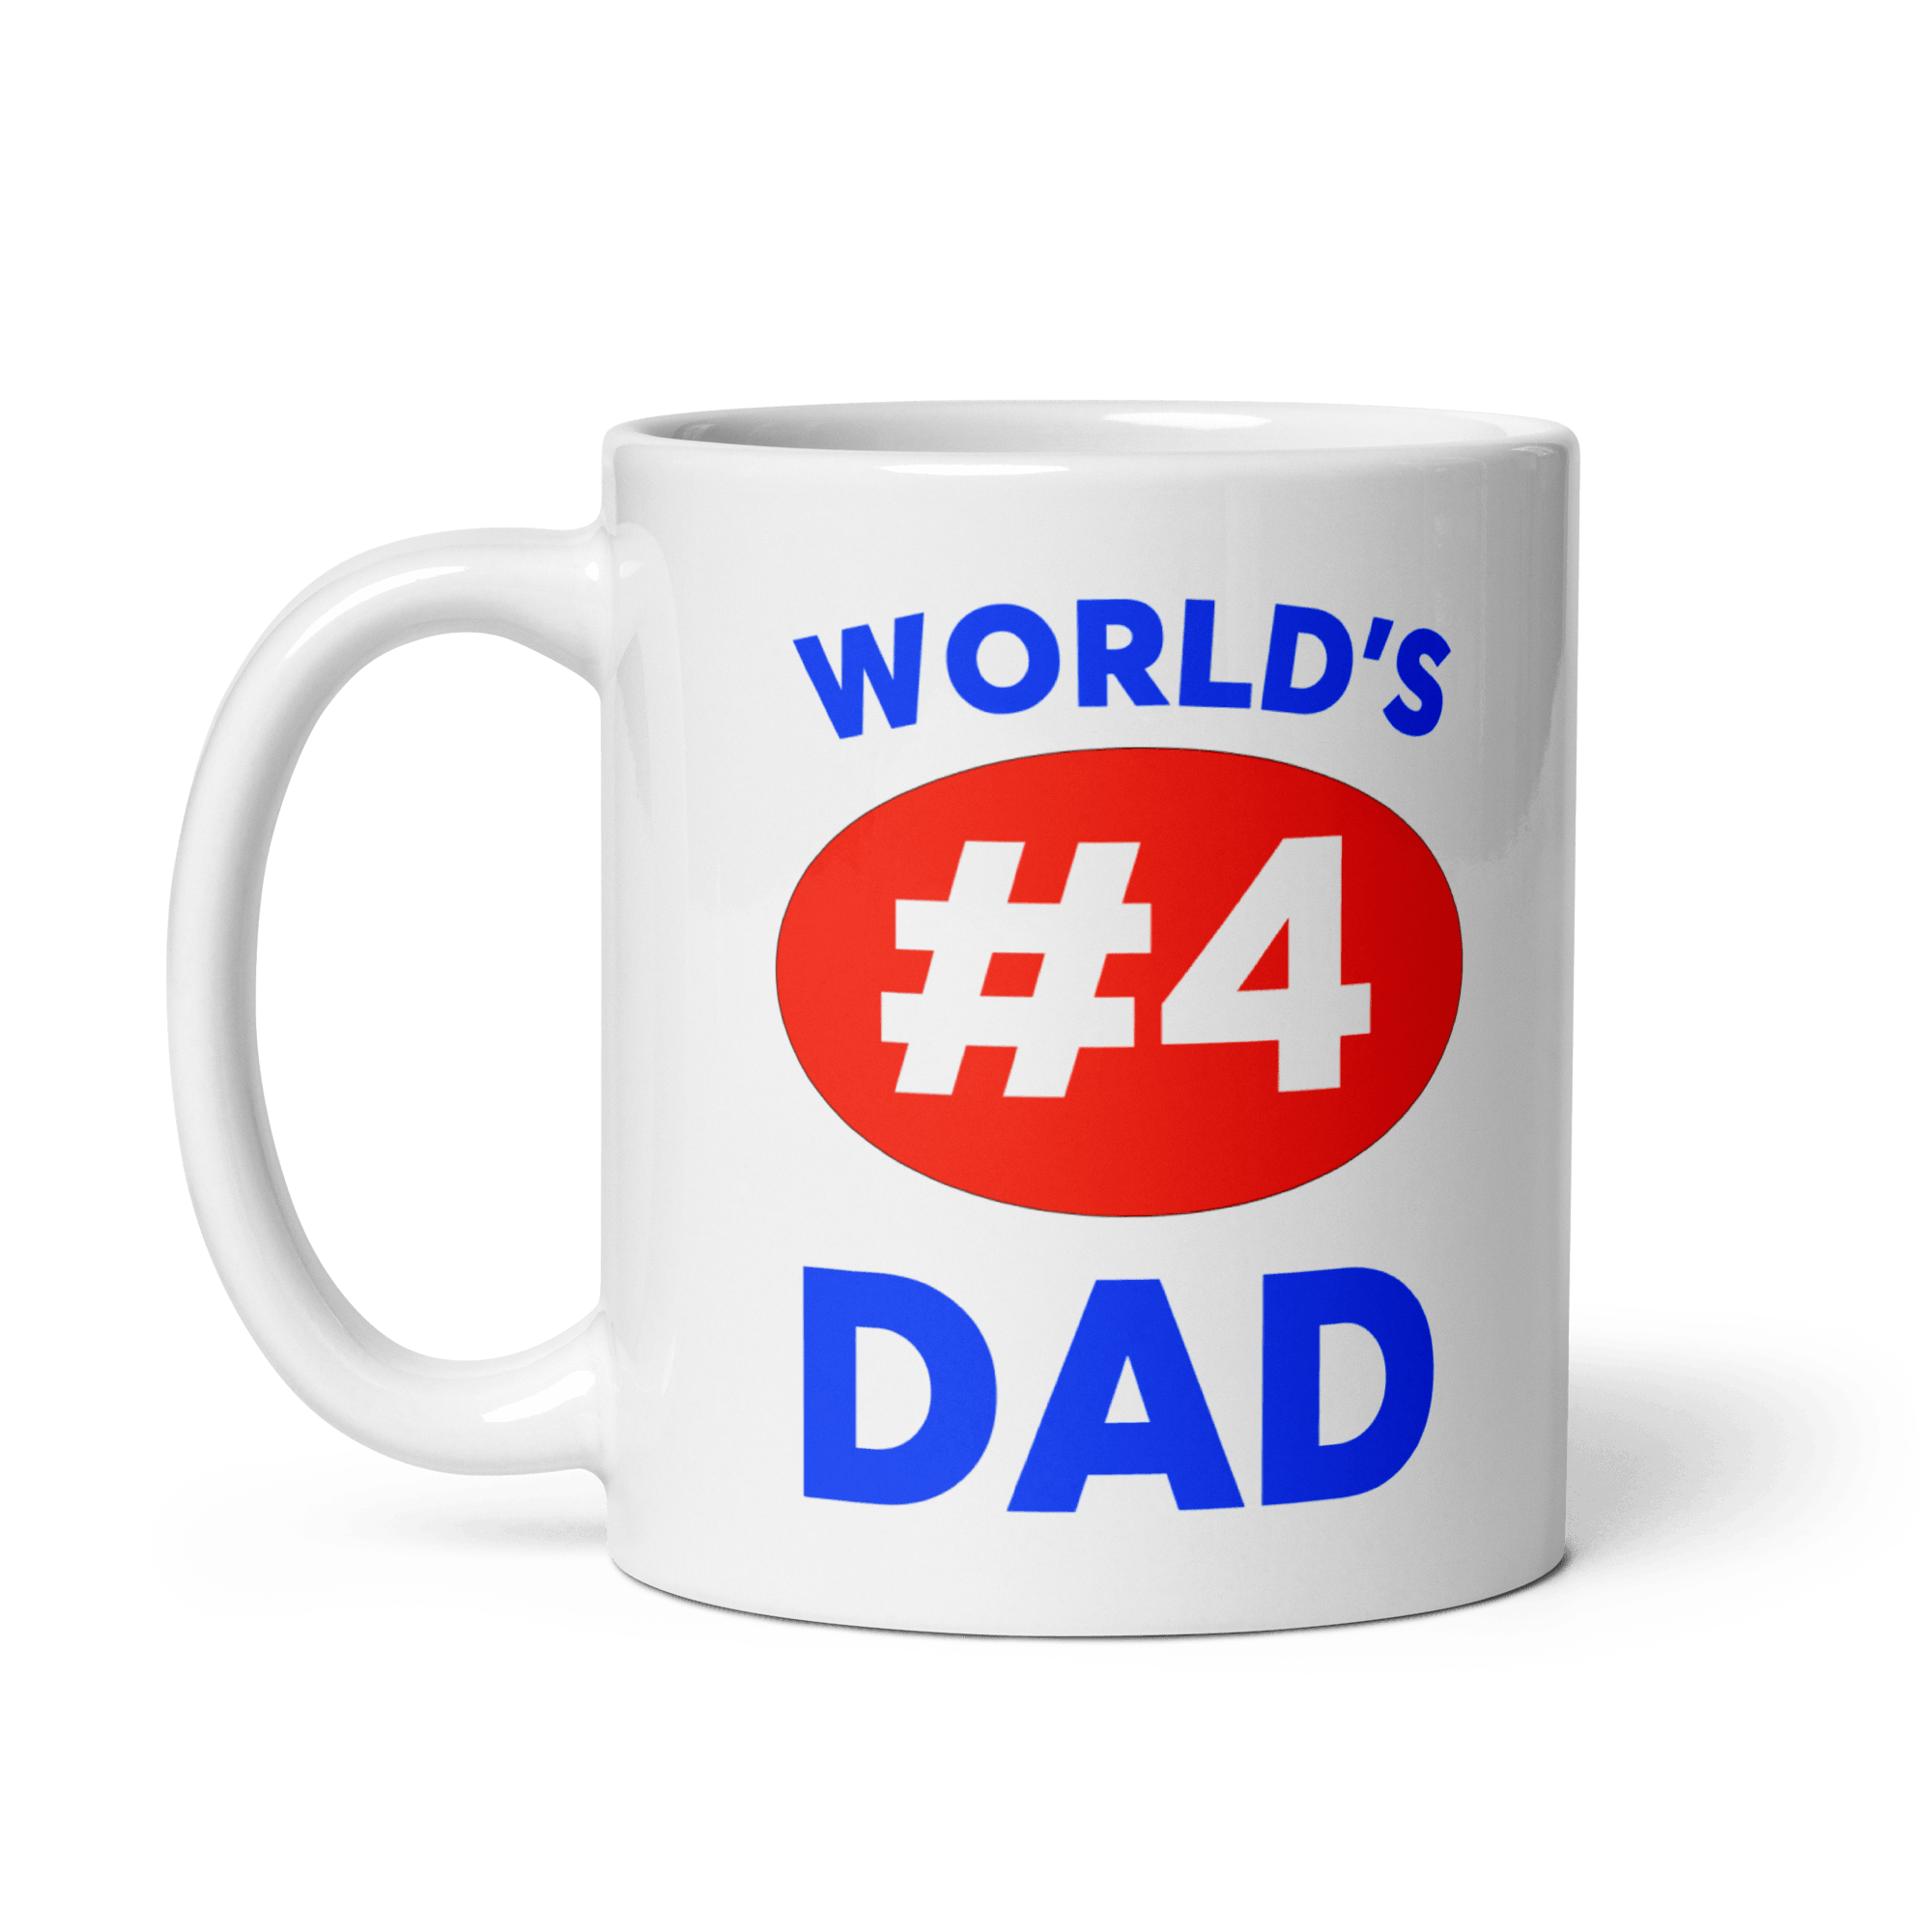 World's #4 Dad Mug - Polychrome Goods 🍊